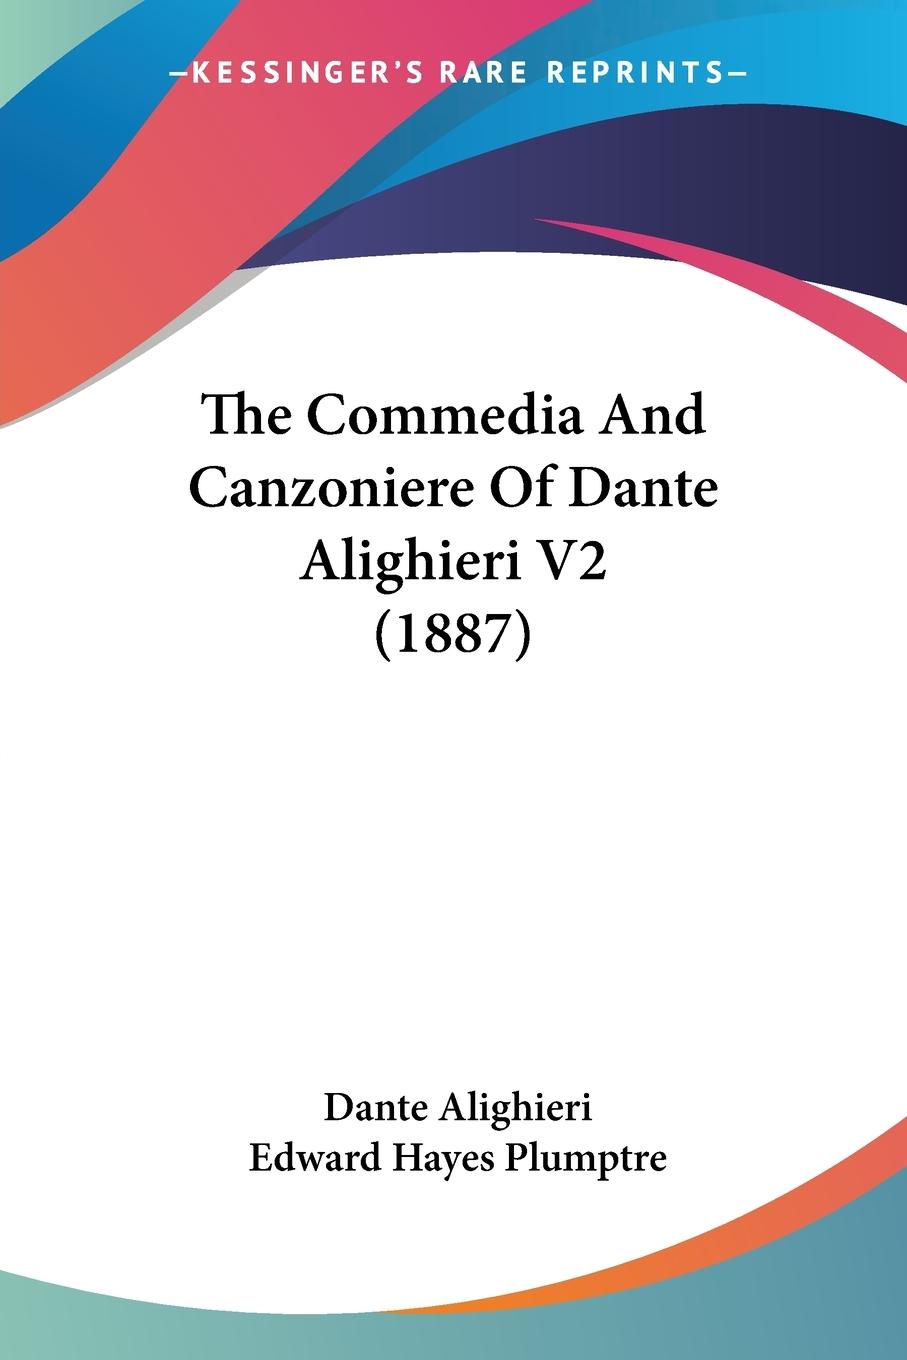 The Commedia And Canzoniere Of Dante Alighieri V2 (1887) - Alighieri, Dante